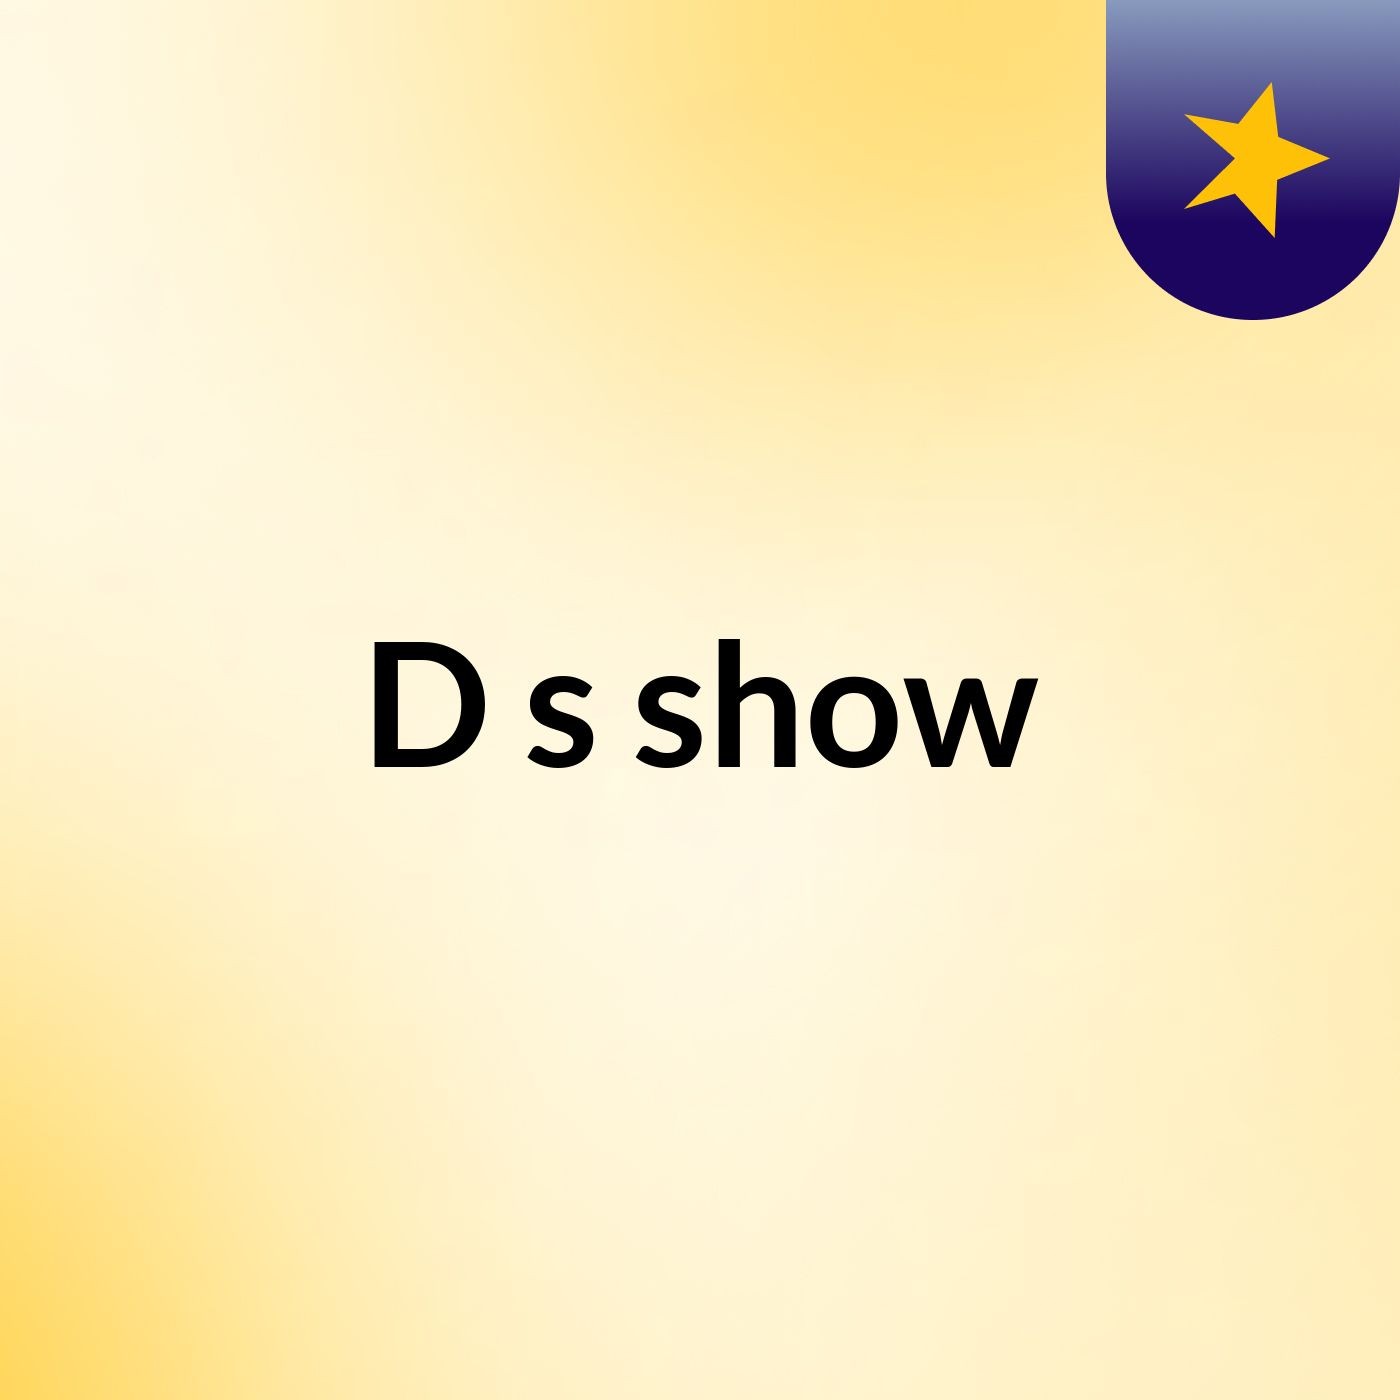 D's show